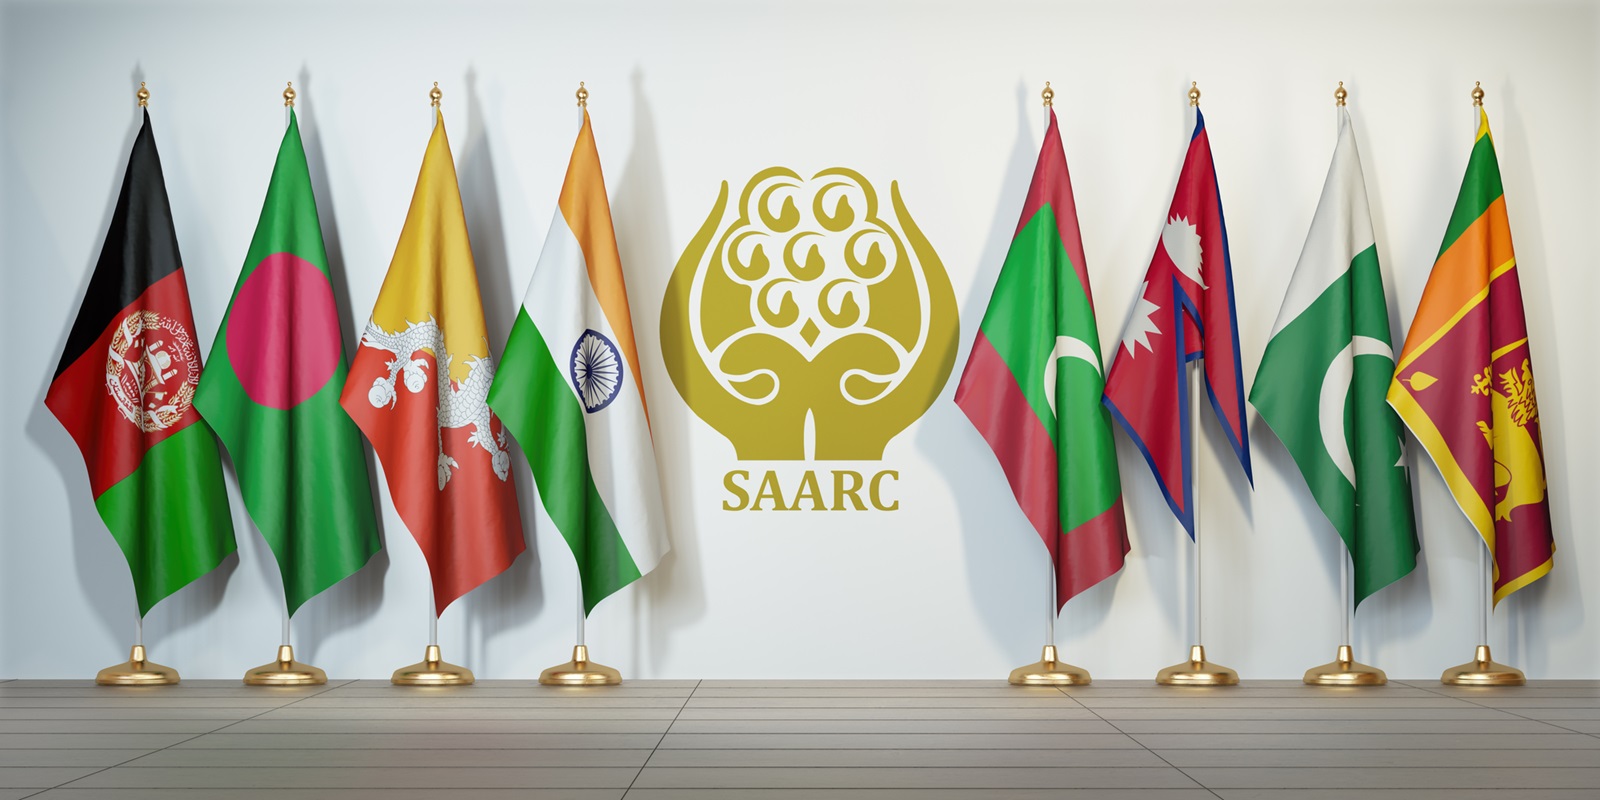 Fuel Cells - SAARC Flags of Members